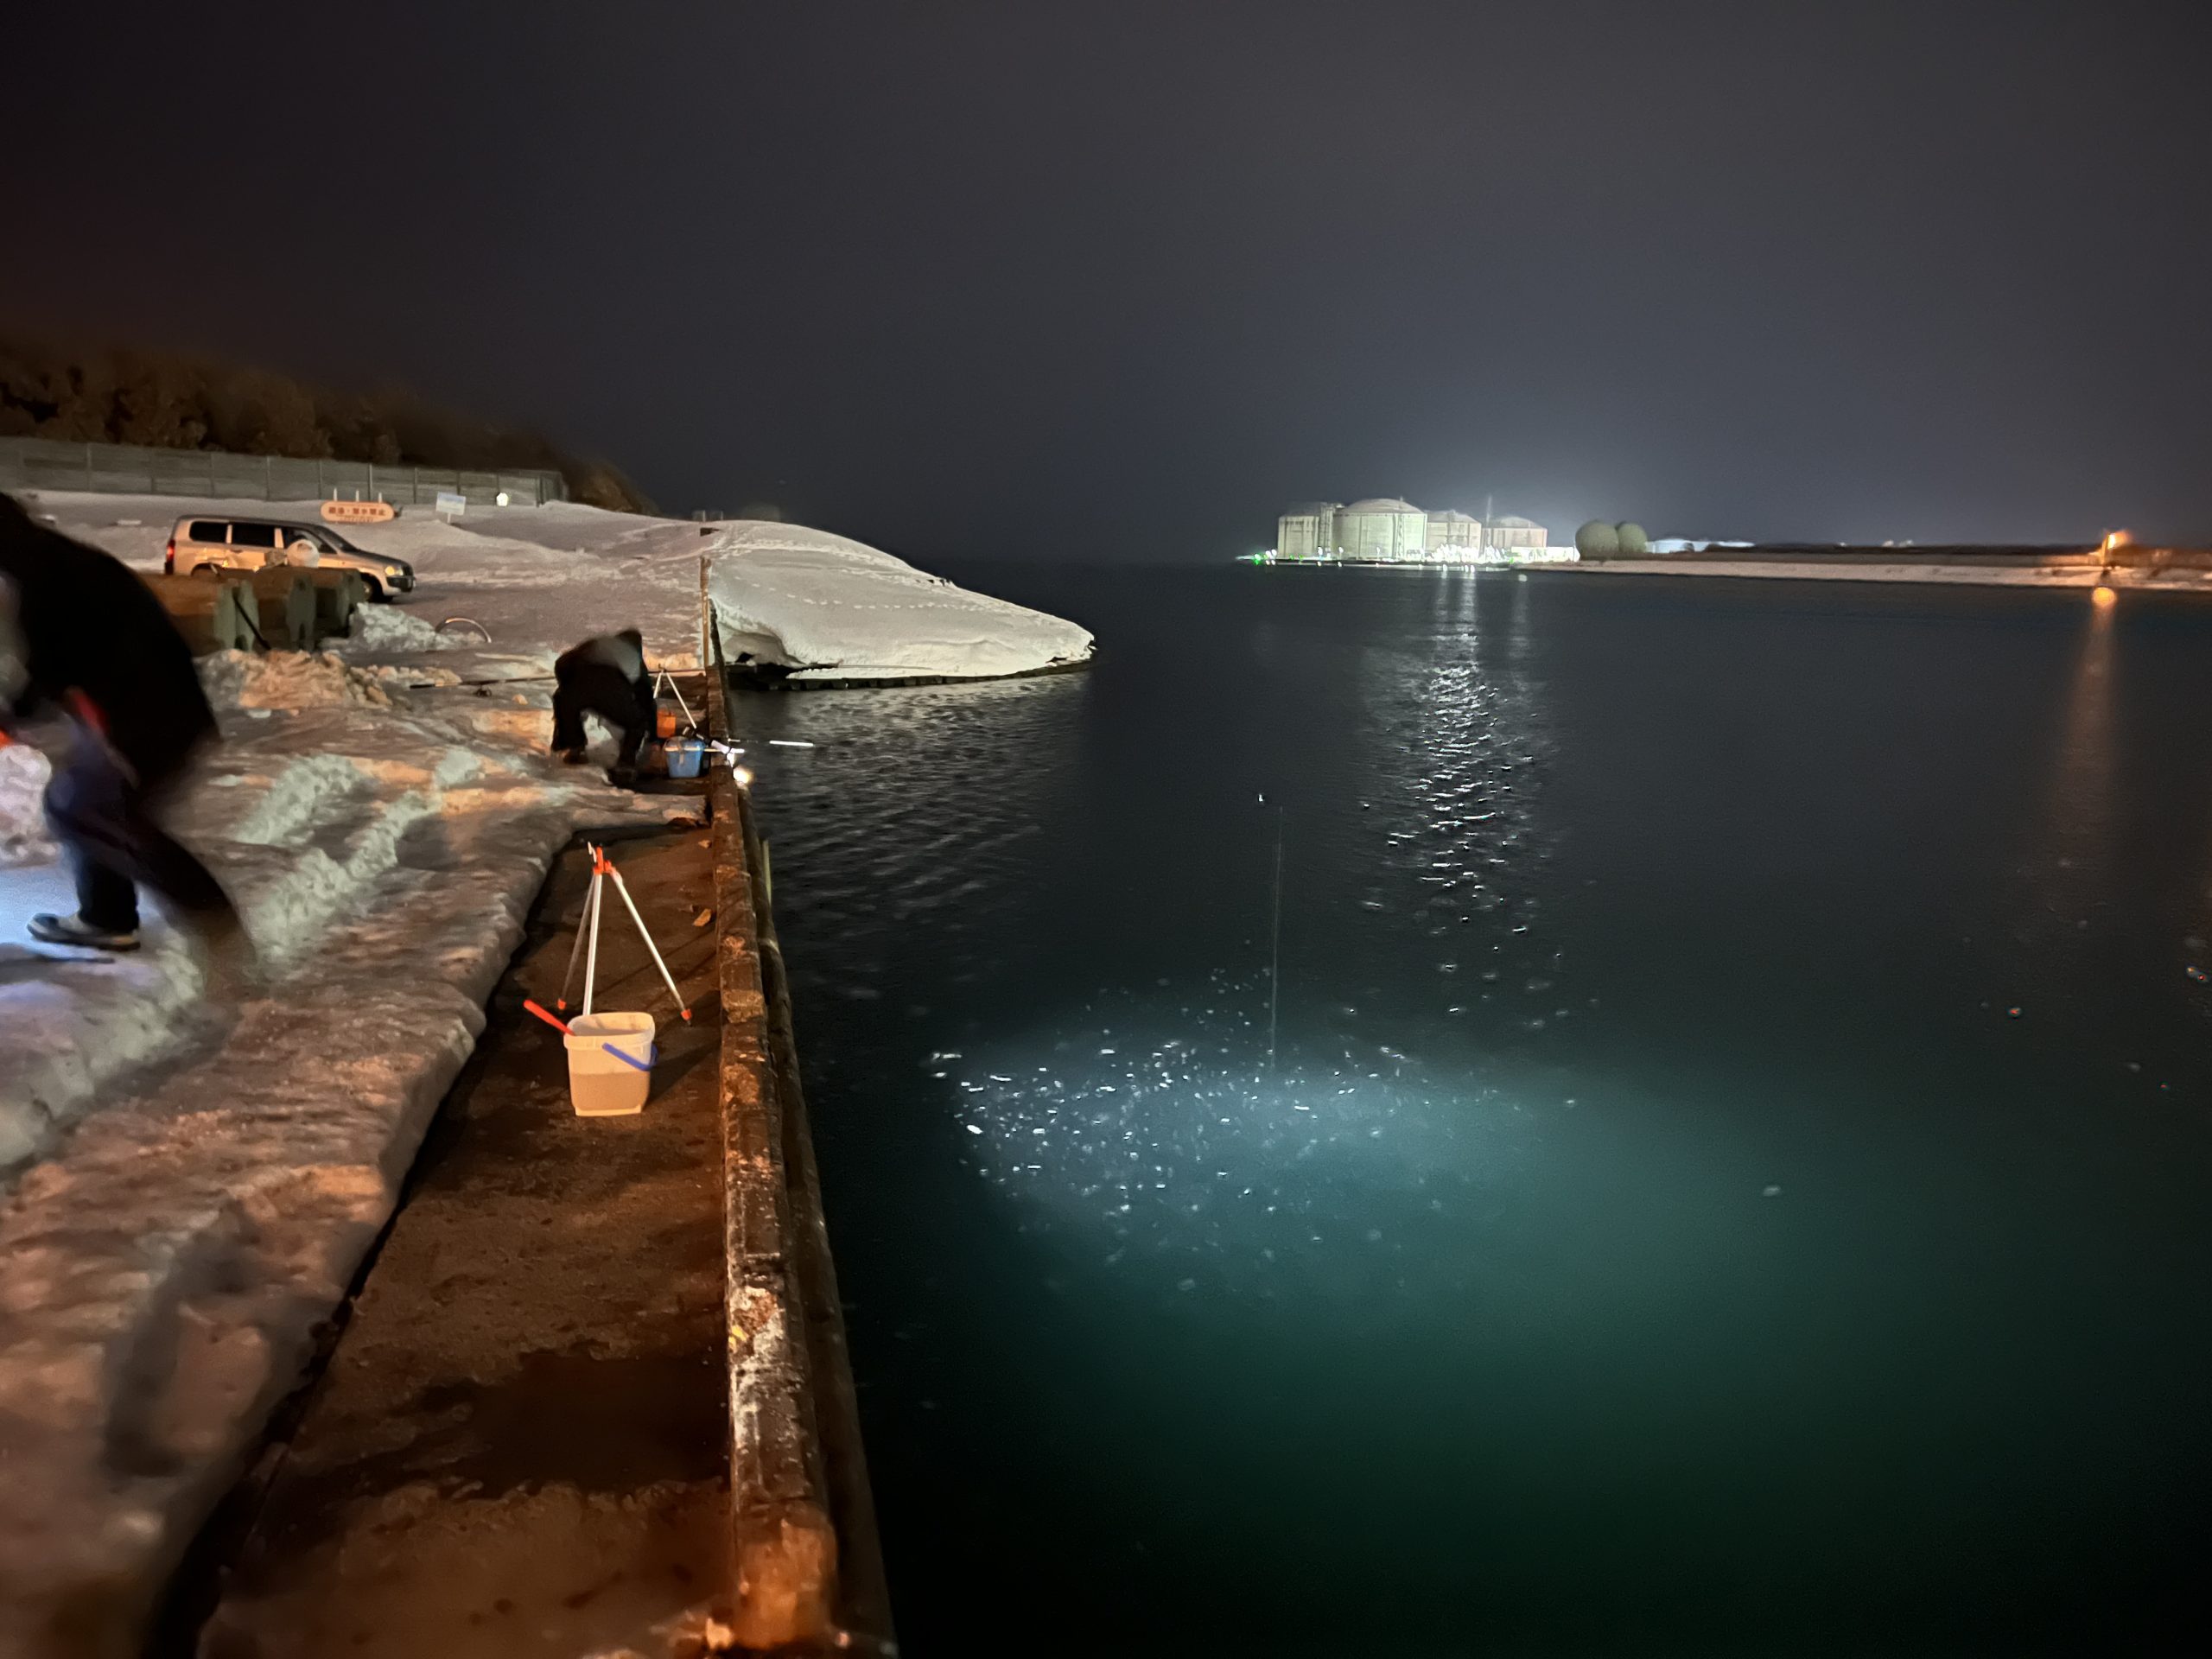 平日深夜の石狩湾新港樽川埠頭のニシン釣り